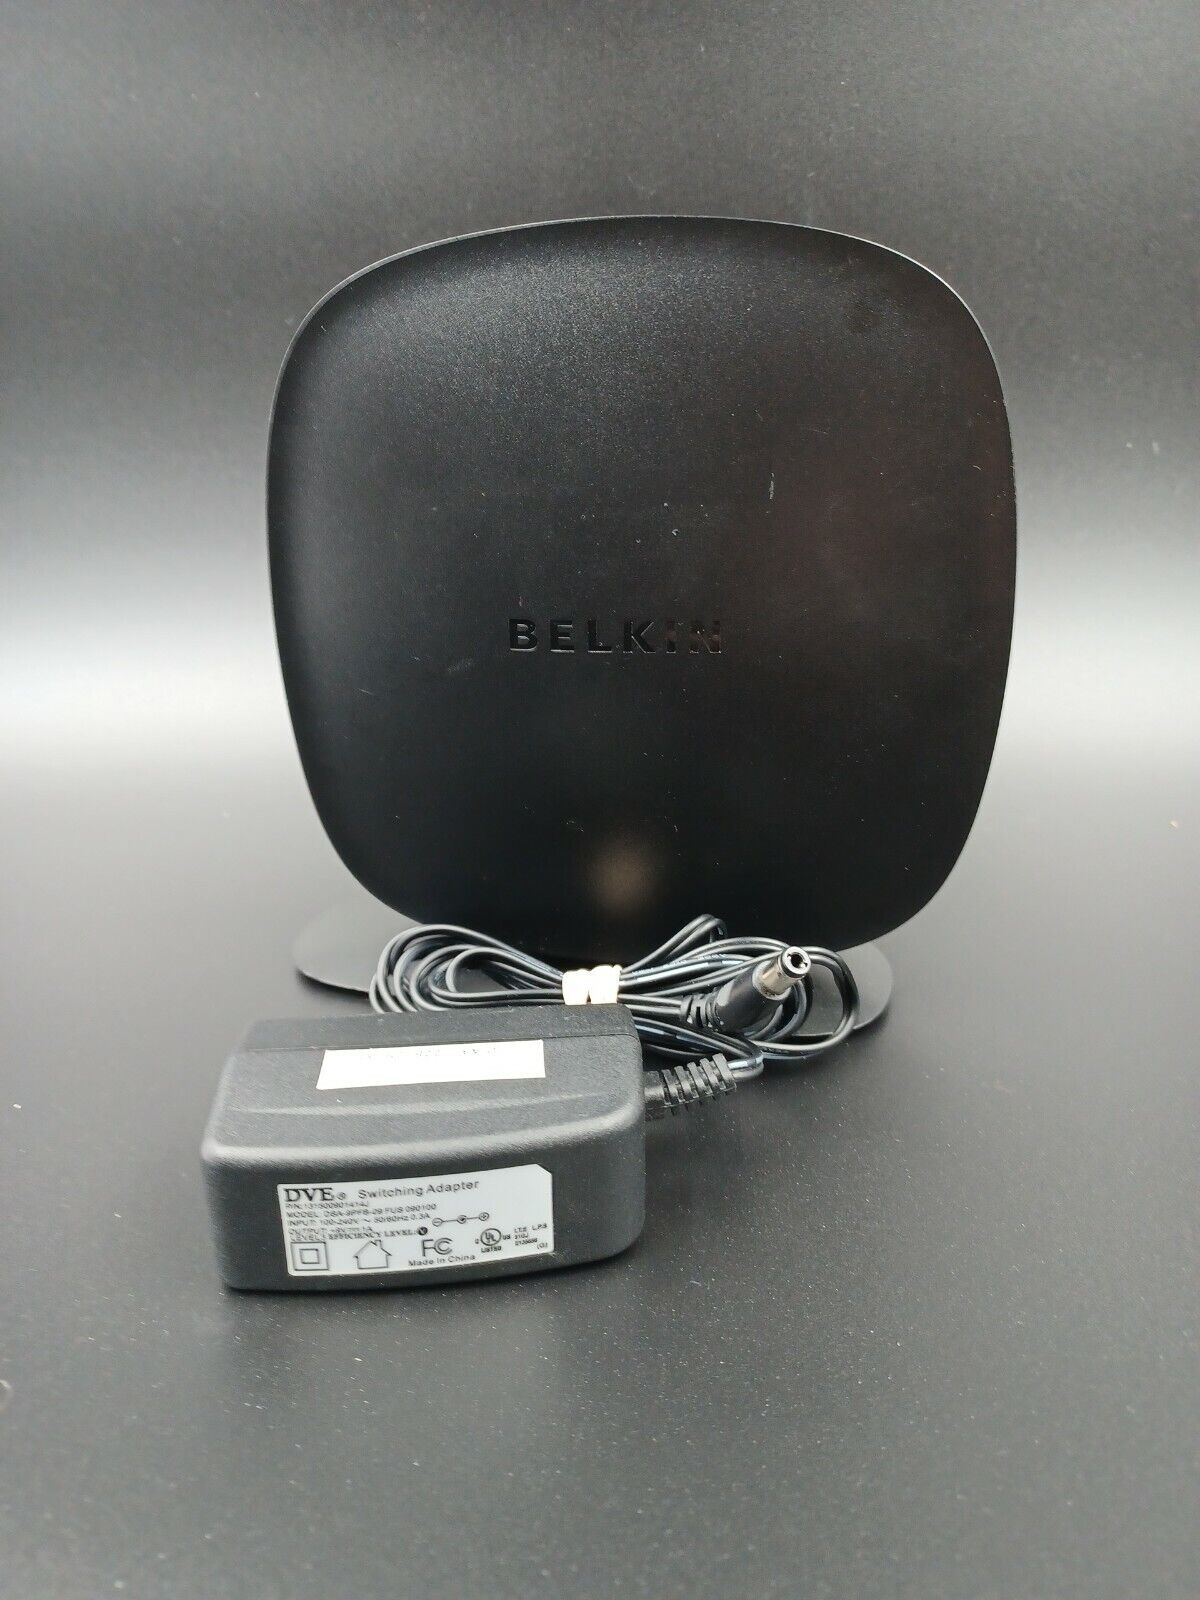 Belkin N300 300 Mbps 4-Port 10/100 Wireless N Router